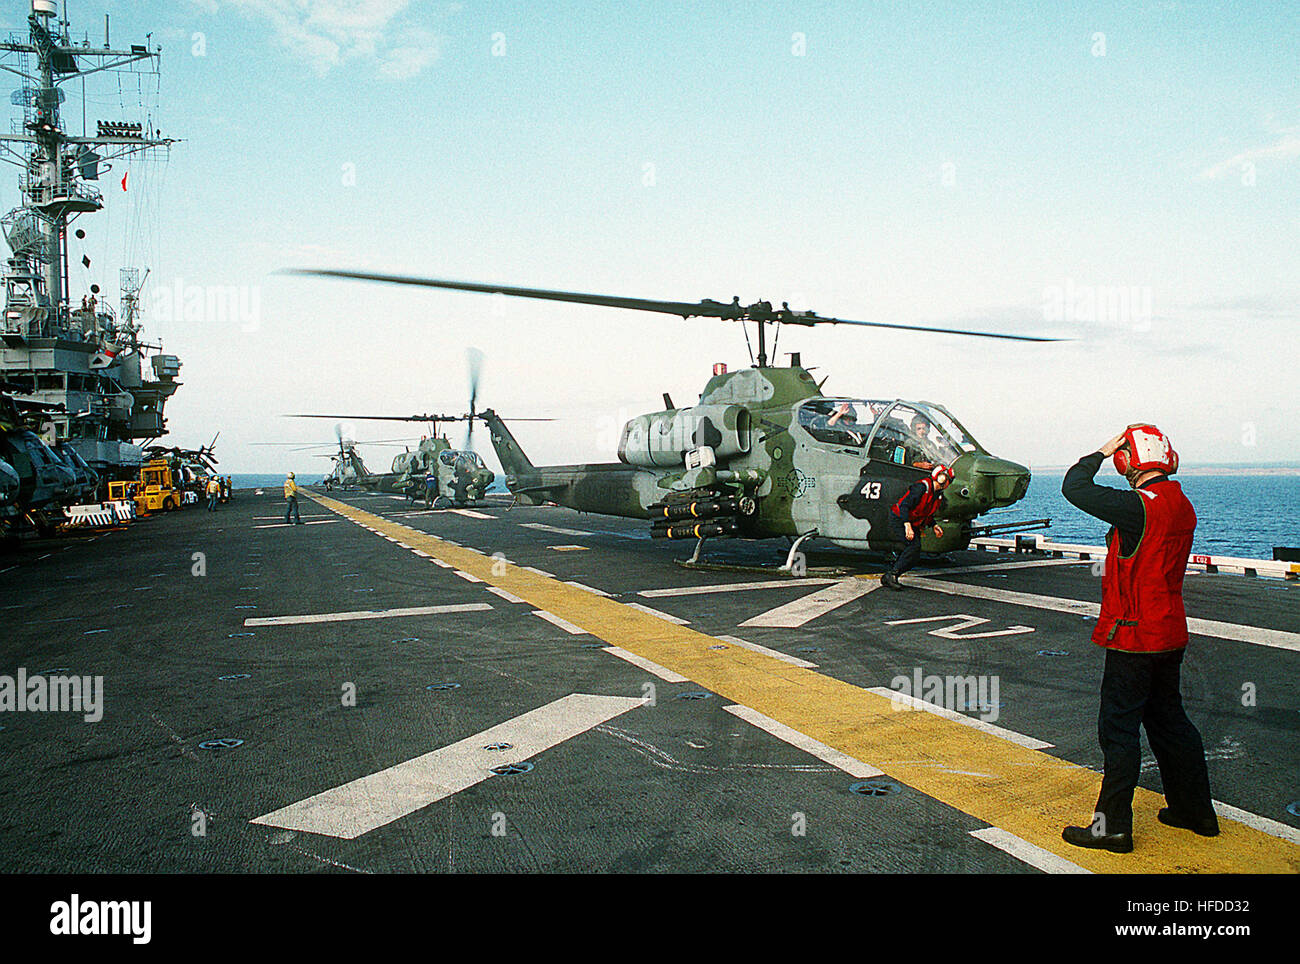 Ein paar Marine Medium Helicopter Squadron 164 (HMM-164) AH-1W Sea Cobra Hubschrauber Start aus dem amphibischen Angriff vorbereiten Schiff USS TRIPOLI (LPH-10).  Die Tripolis ist vor der Küste von Mogadischu, Somalia, in der multinationale Hilfsaktion Operation Restore Hope Betrieb.  Vier AGM-114 Hellfire Luft-Boden-Raketen und ein M-260 2,75 Zoll Raketenwerfer sind auf der richtigen Waffen Station des ersten Hubschraubers montiert. AH-1W Cobras an Bord der USS Tripoli (LPH-10) vor Somalia 1992 Stockfoto